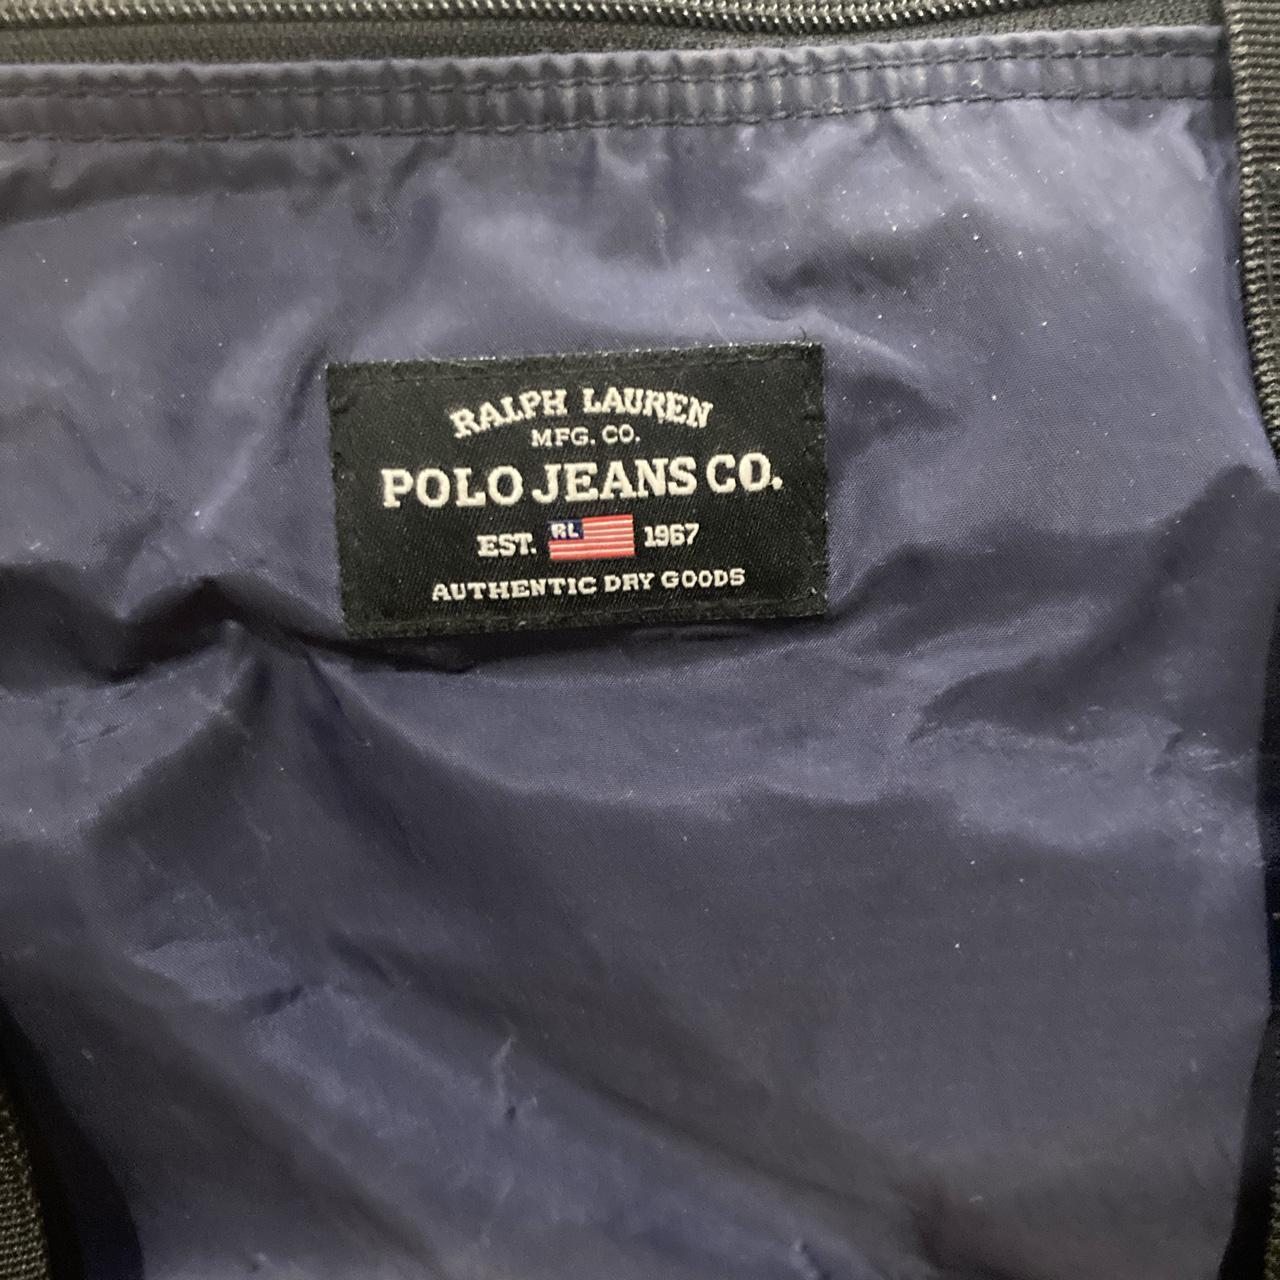 Ralph Lauren polo jeans company blue expandable bag... - Depop